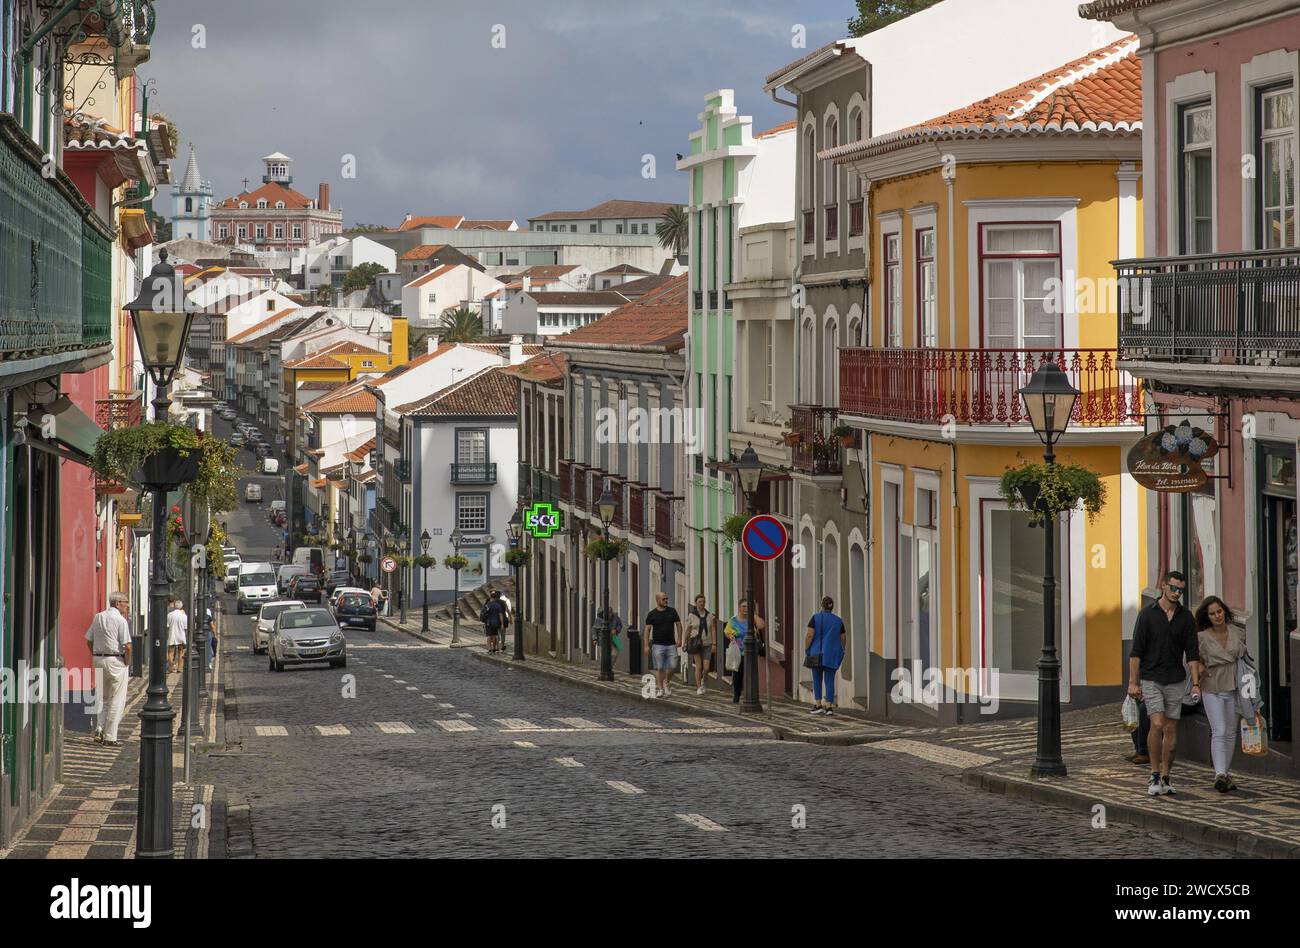 Portugal, archipel des Açores, île de Terceira, Angra do Heroismo, Rua da se, rue principale du centre historique avec ses maisons coloniales colorées et ses trottoirs aux pavés noirs et blancs Banque D'Images